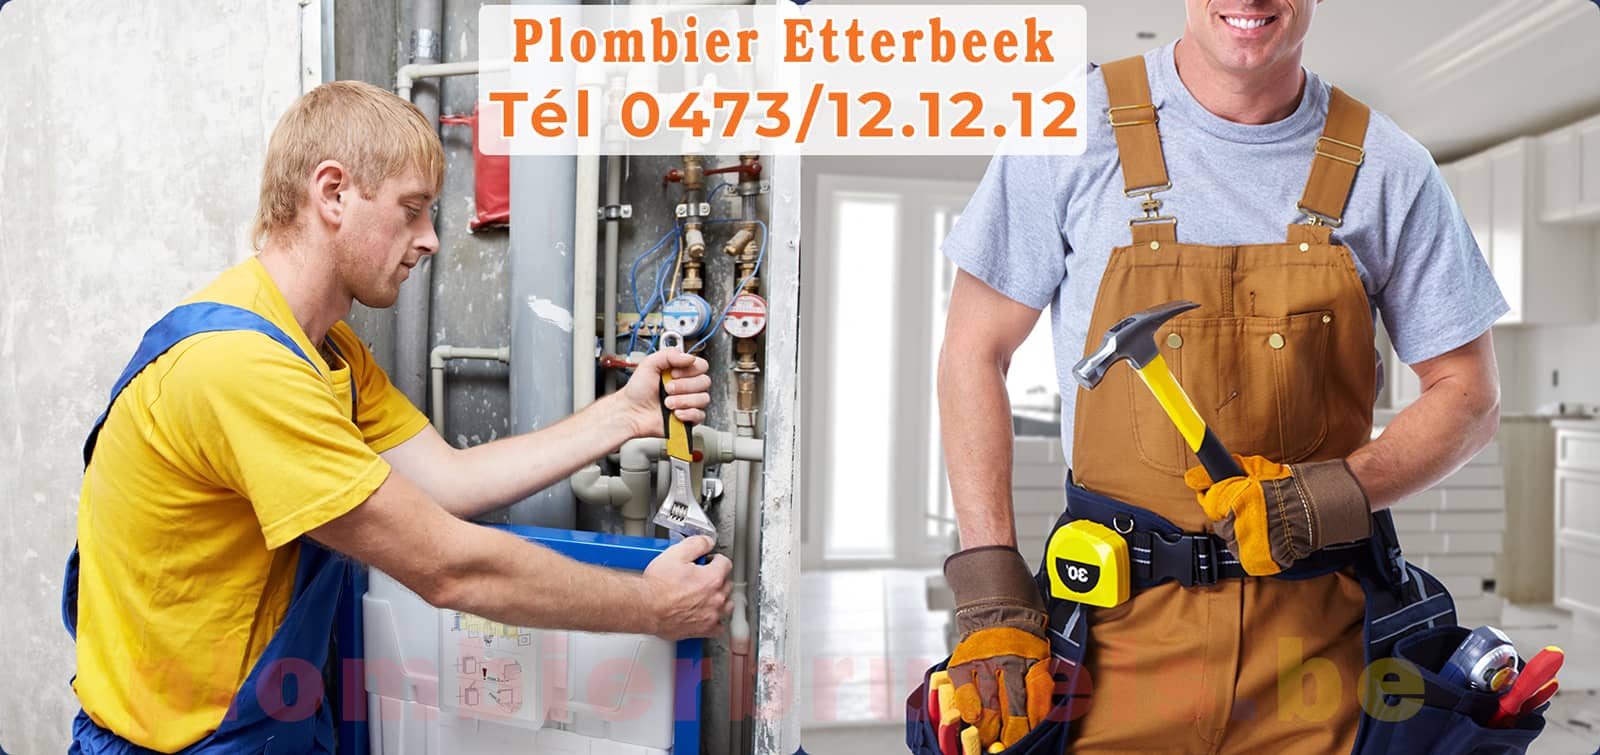 Plombier Etterbeek service de Plomberie tél 0473/12.12.12